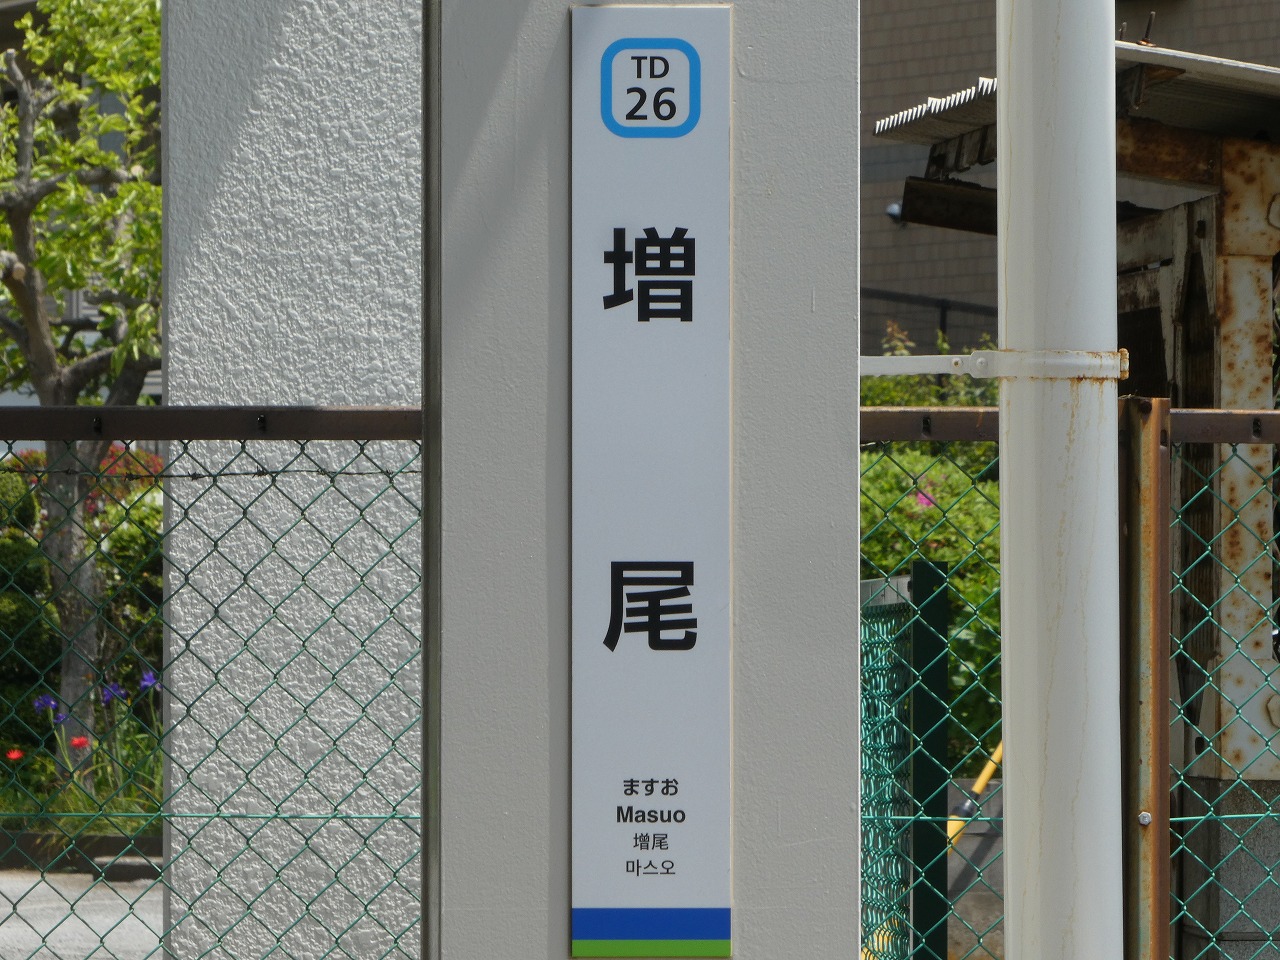 縦型の駅名標